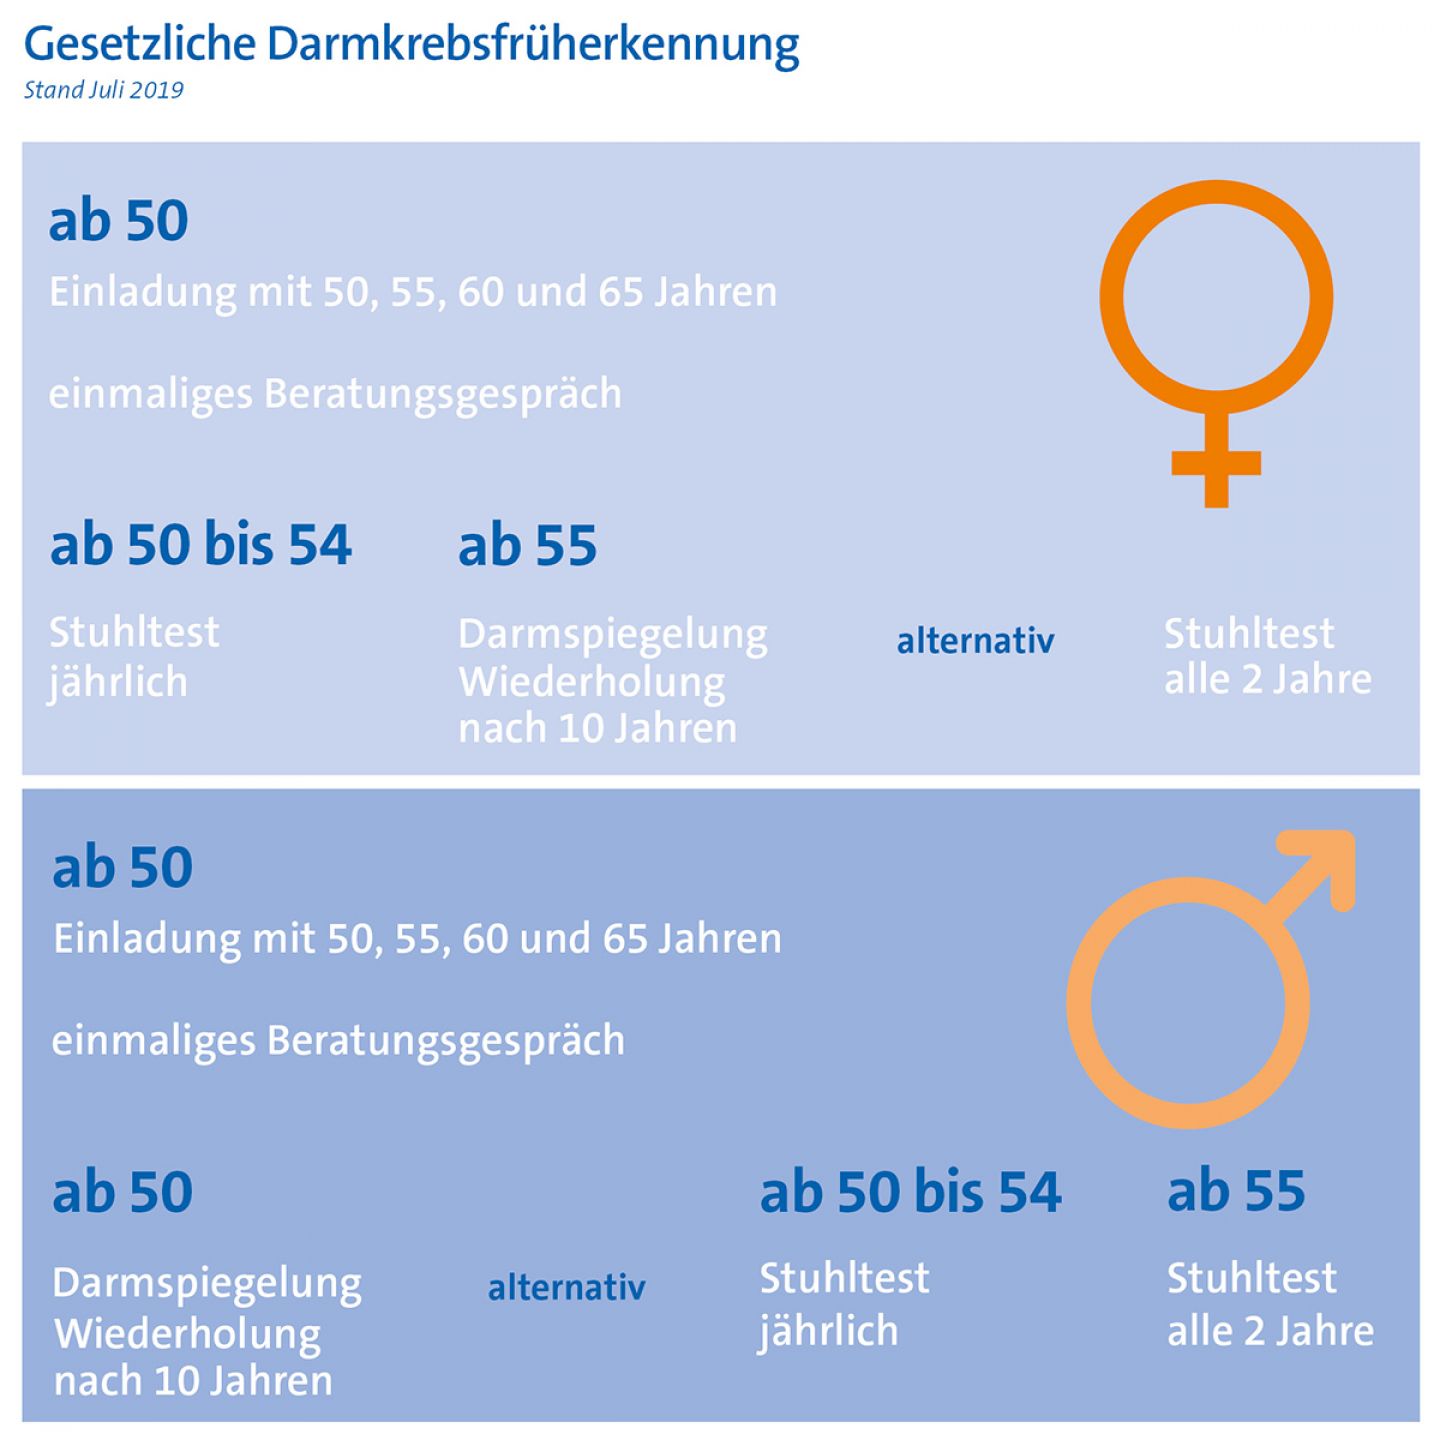 Regelungen zur Darmkrebsfrüherkennung ab 2019 © Krebsinformationsdienst, Deutsches Krebsforschungszentrum